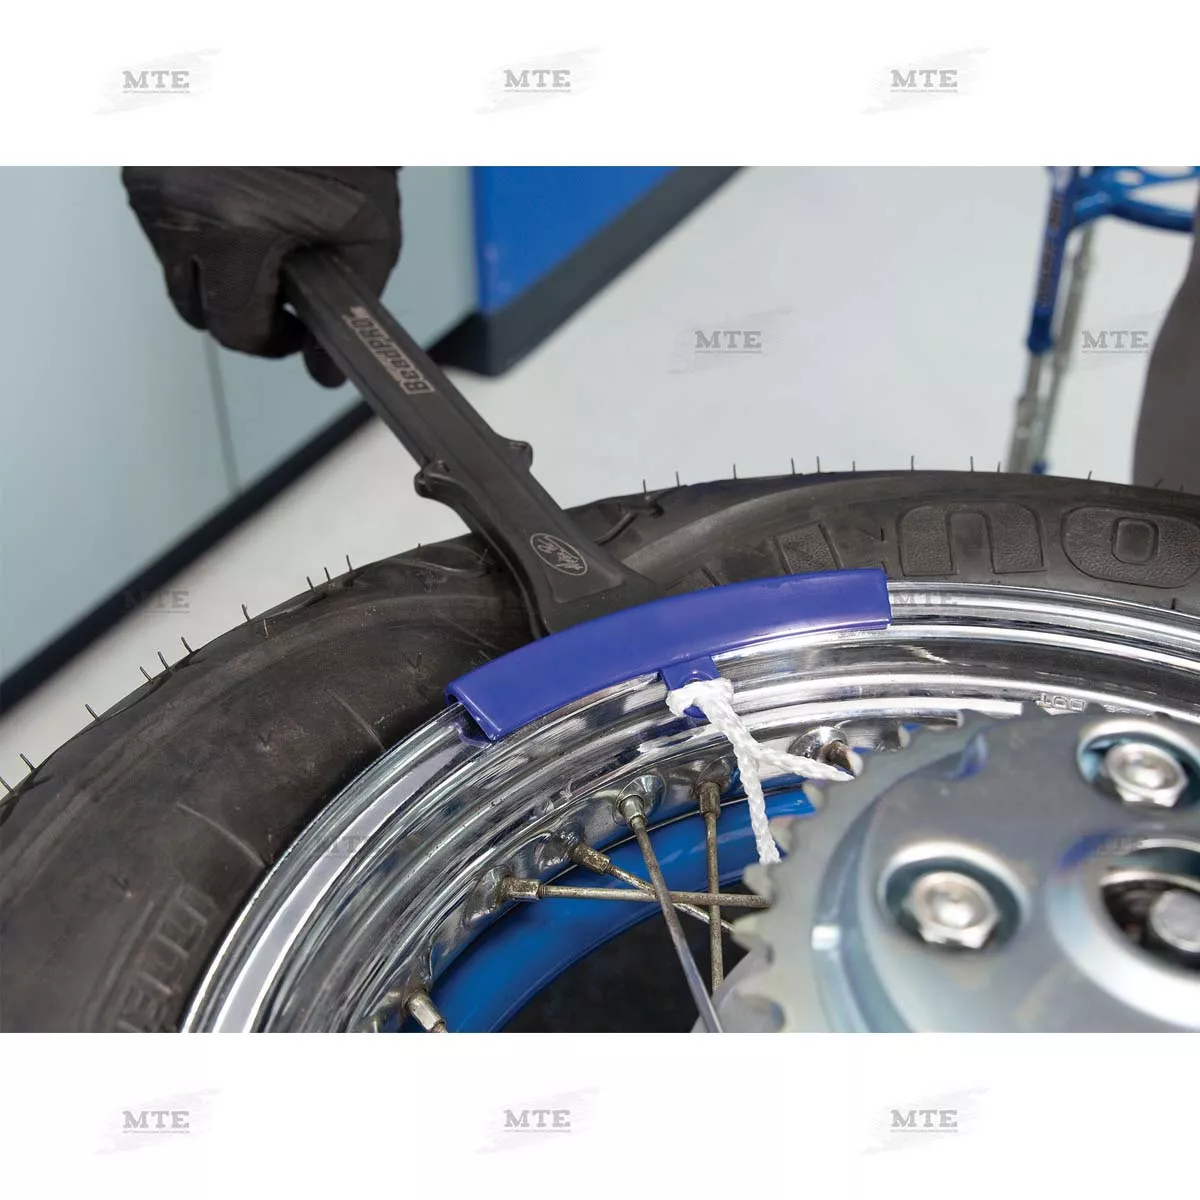 Felgenschutzaufsatz für die Demontage/Montage: Wheelprotect - News -  VAU-MAX - Das kostenlose Performance-Magazin